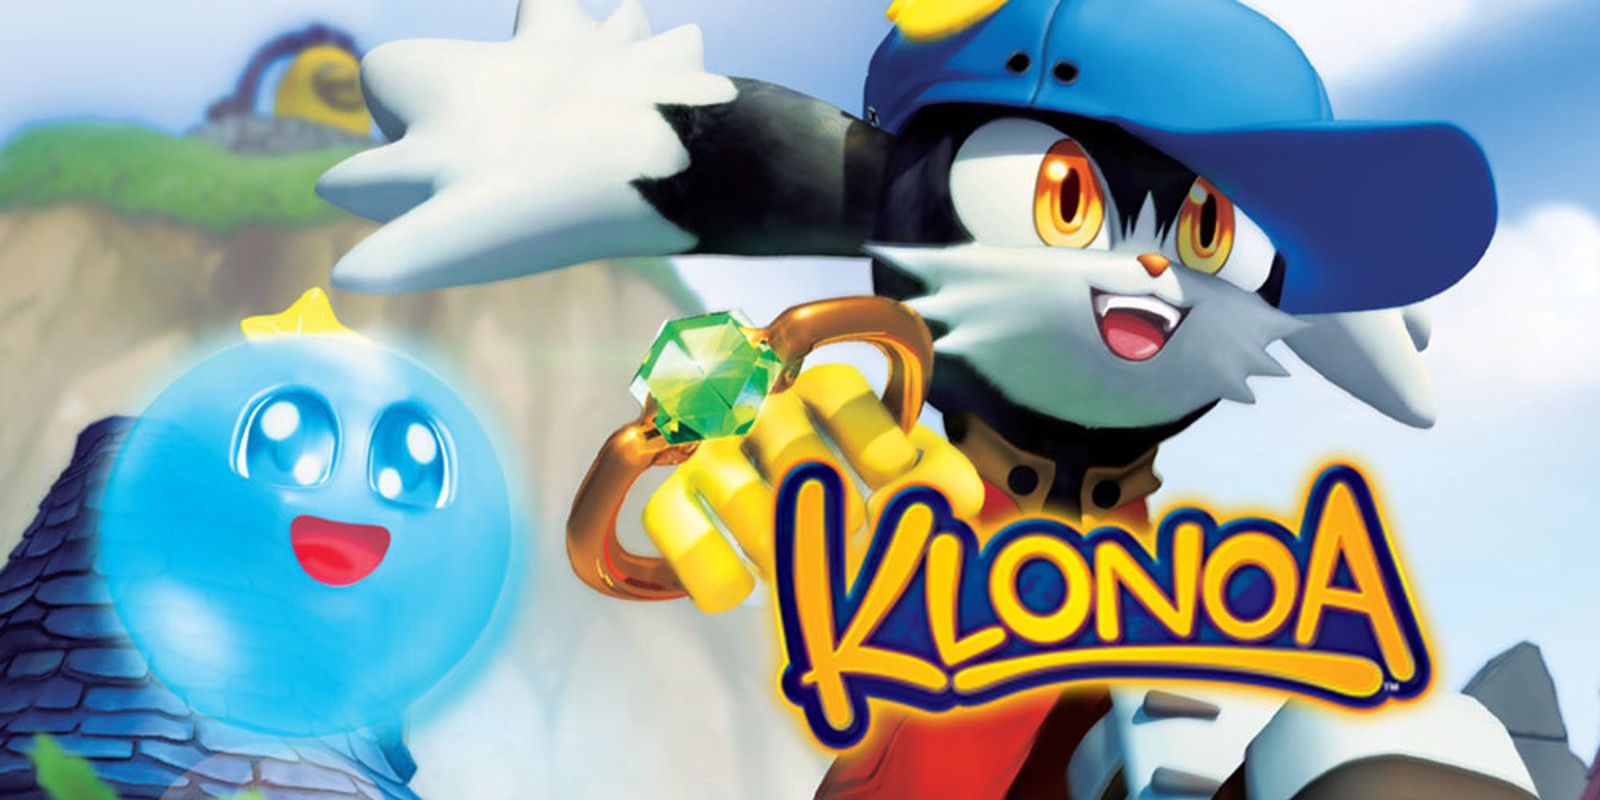 download klonoa switch release date